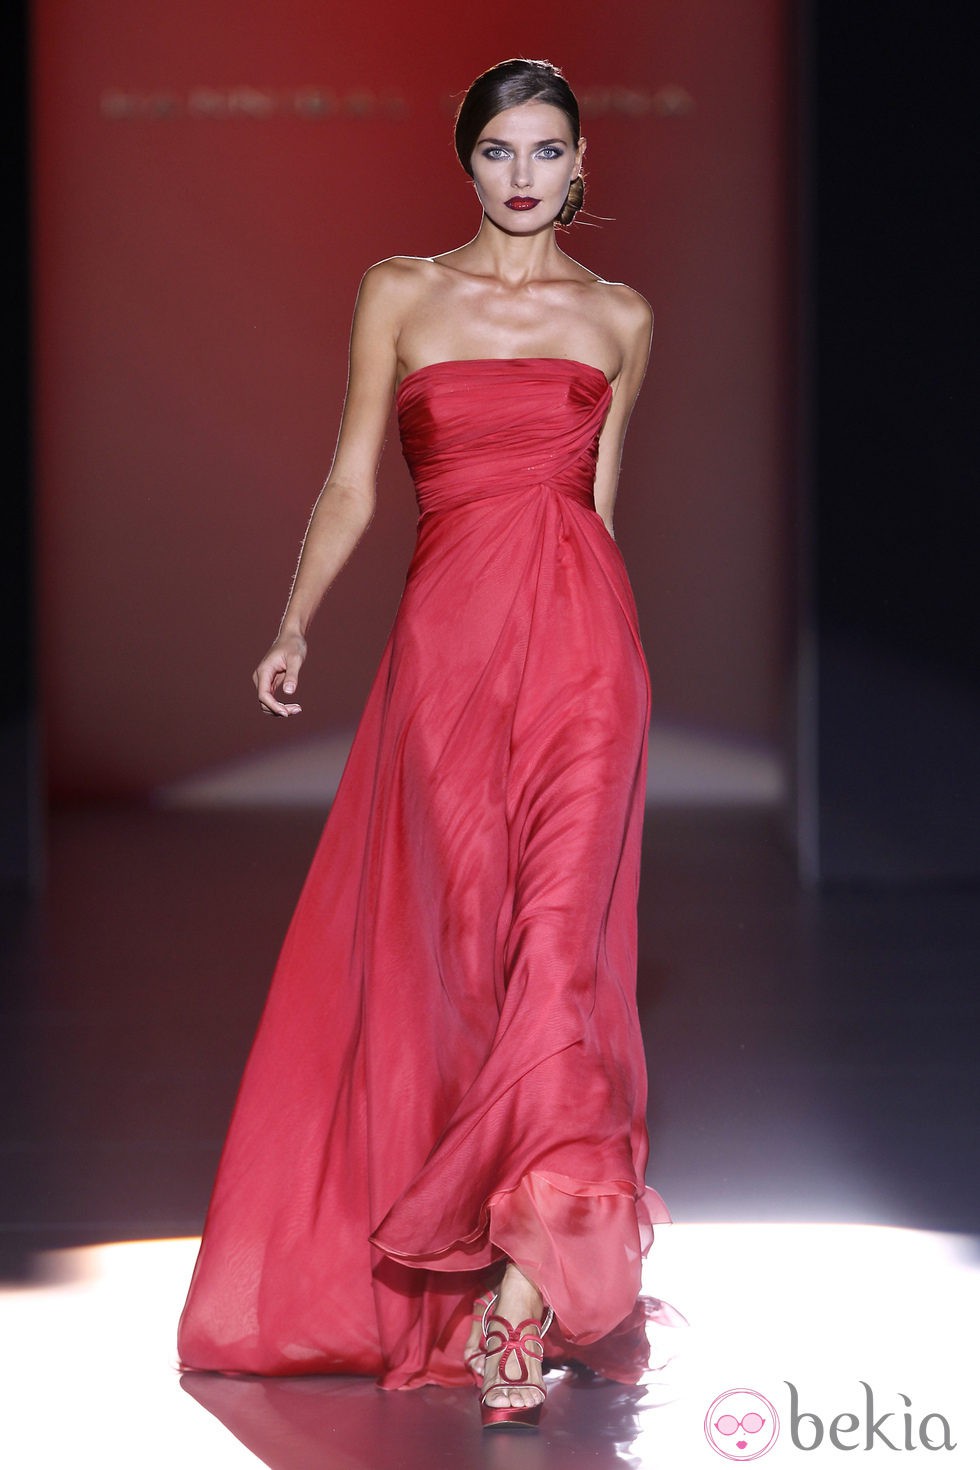 Vestido rojo de Hannibal Laguna en Cibeles, colección primavera de 2012